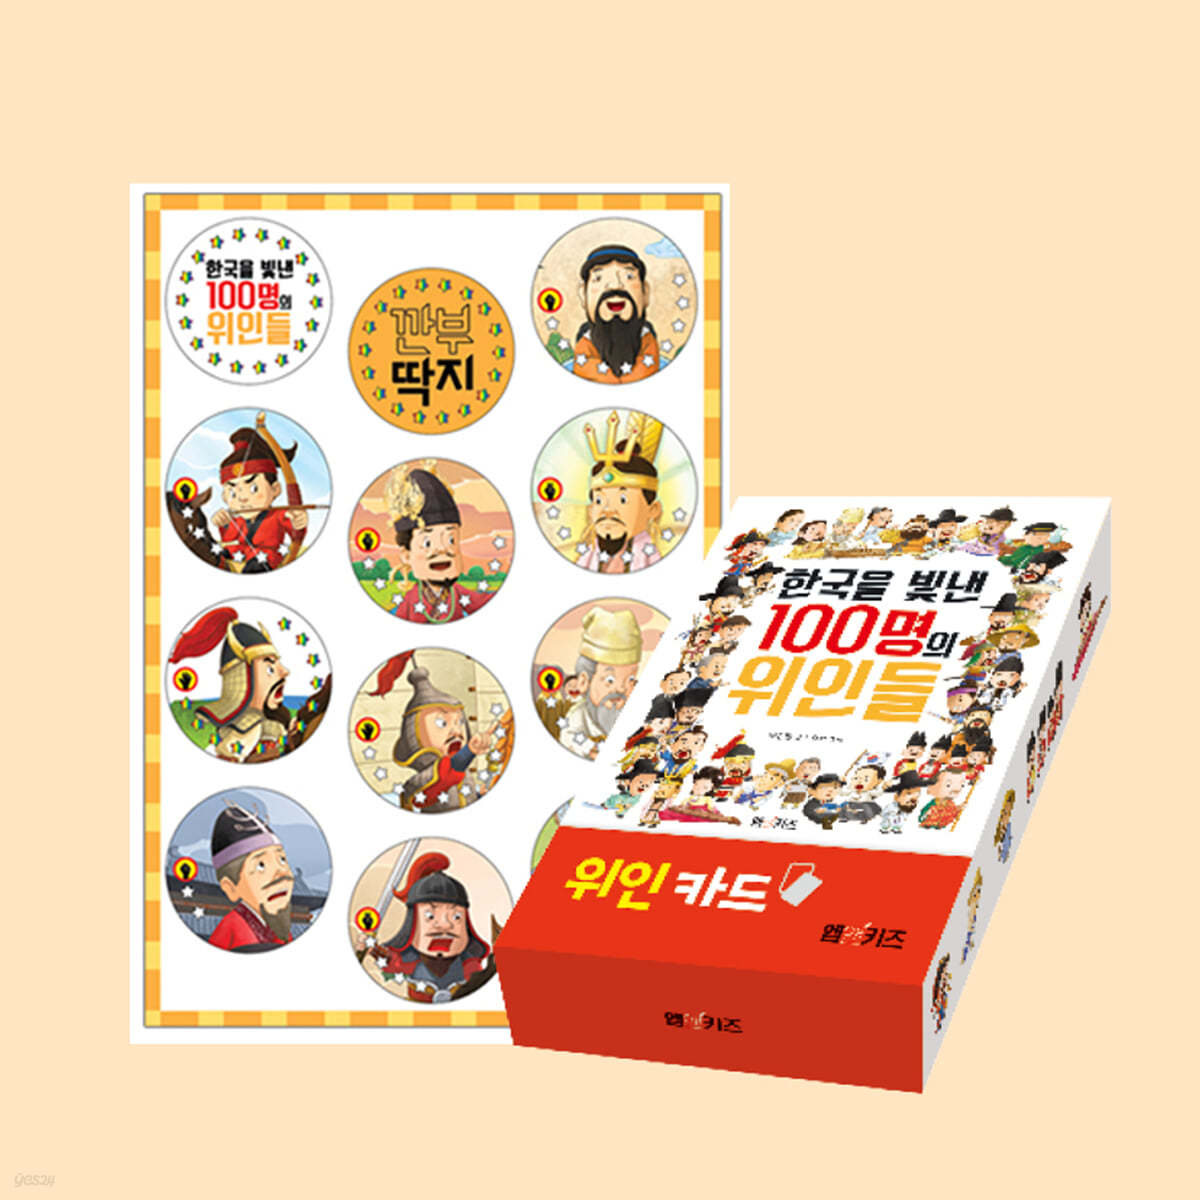 한국을 빛낸 100명의 위인들 위인카드 + 깐부 딱지 세트